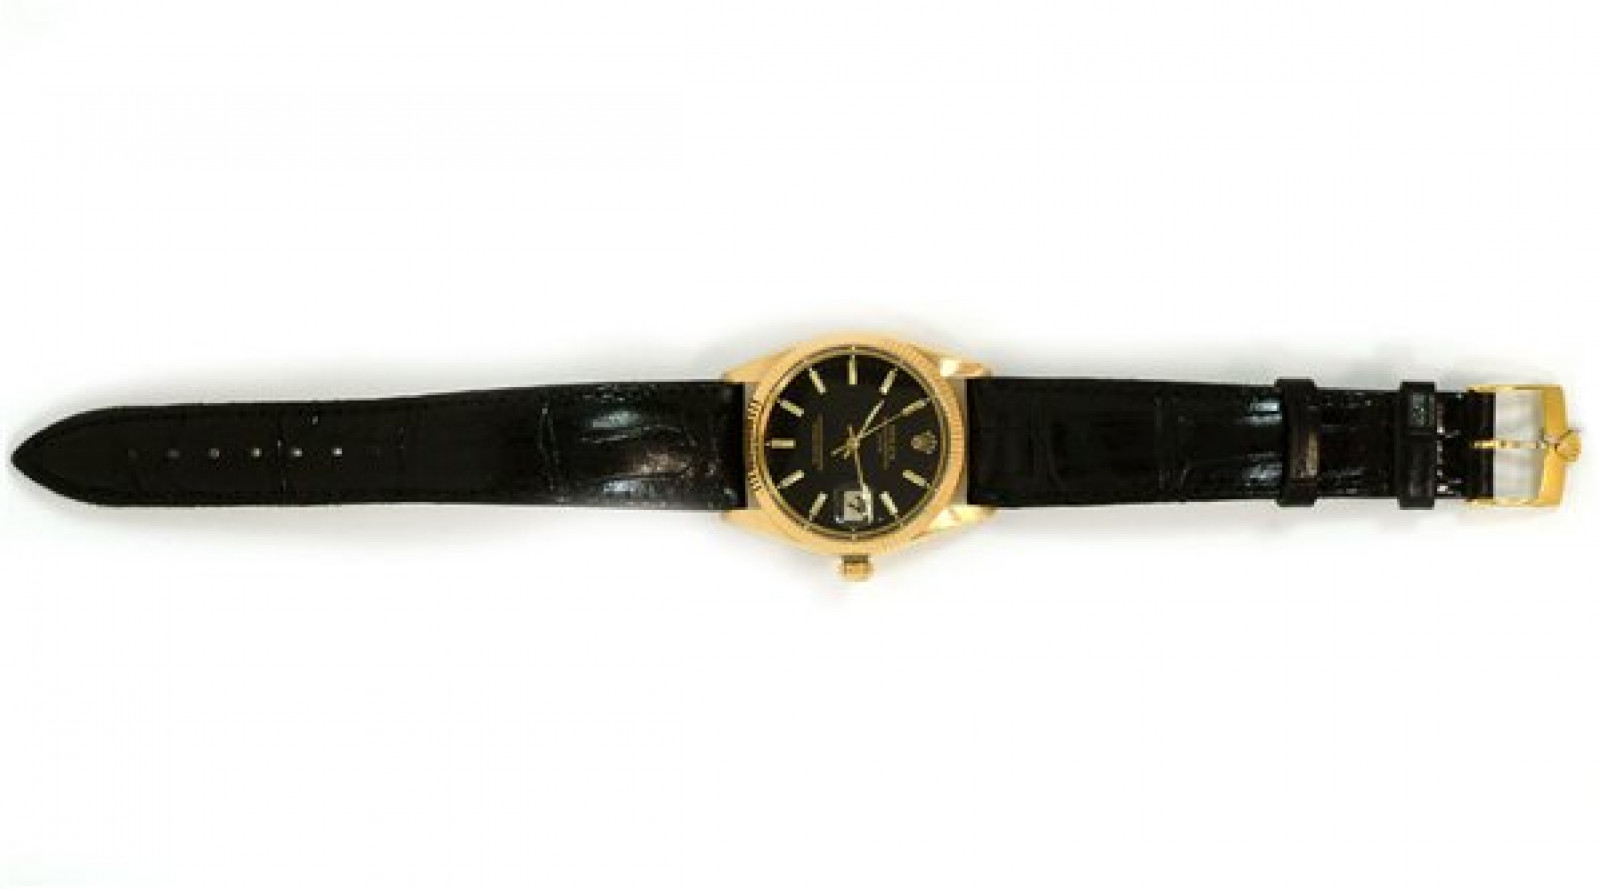 Vintage Rolex Date 1503 Gold Year 1960